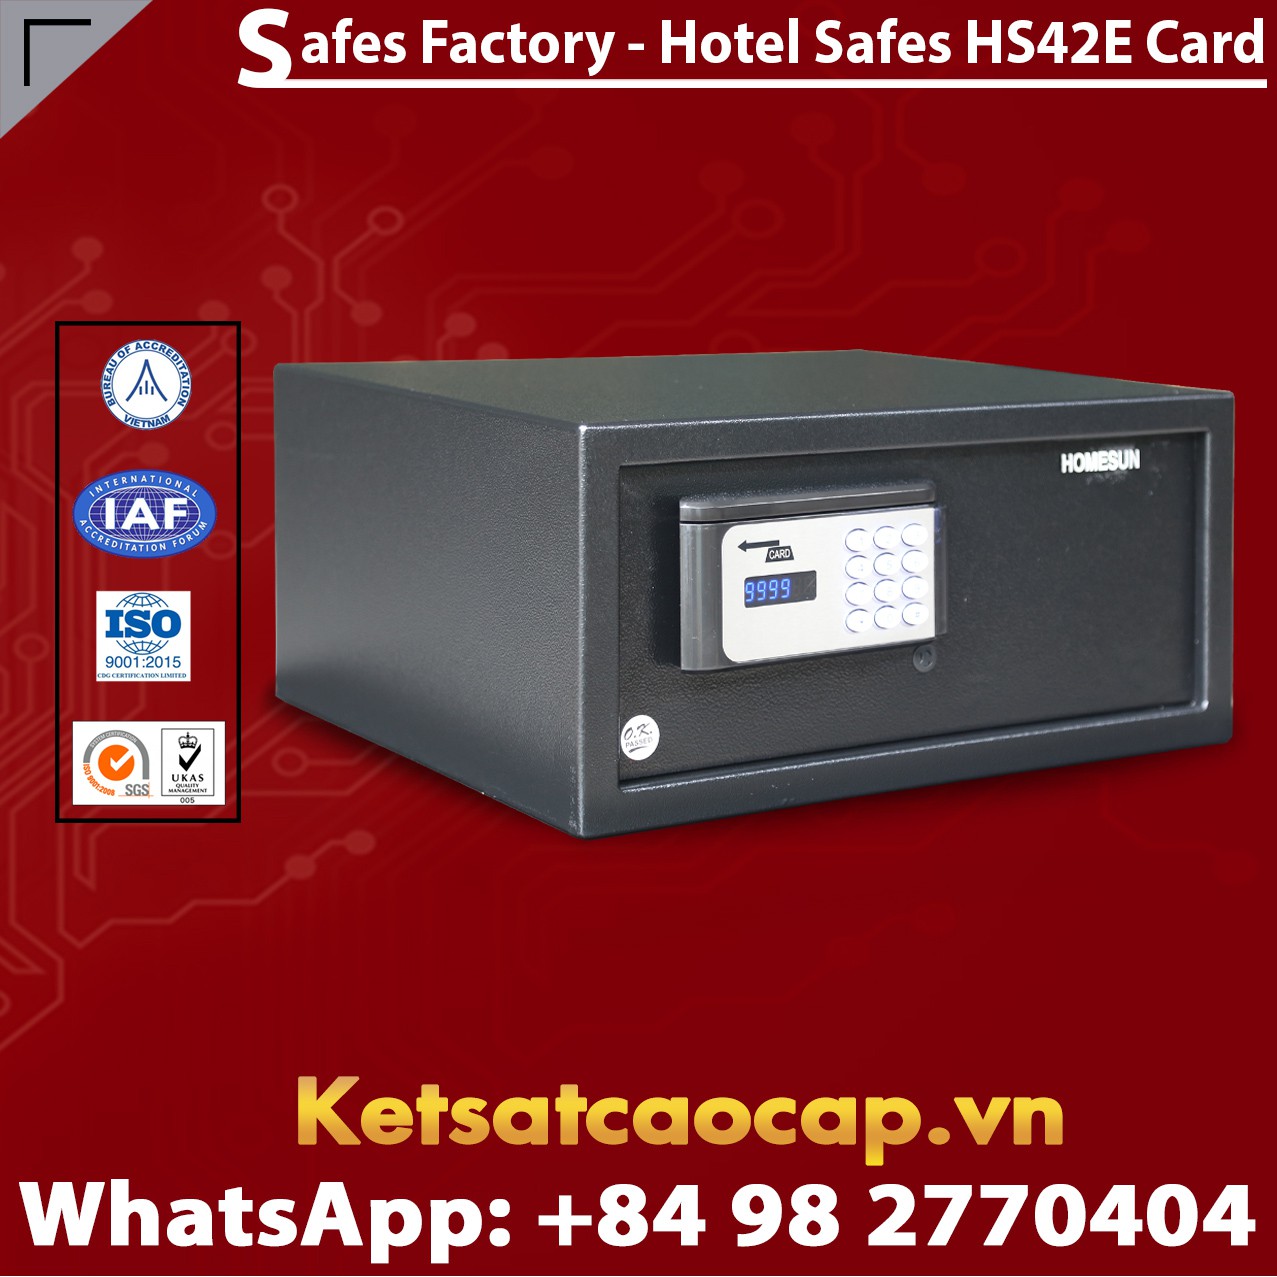 Hotel Room Safe HOMESUN HS42 E Card